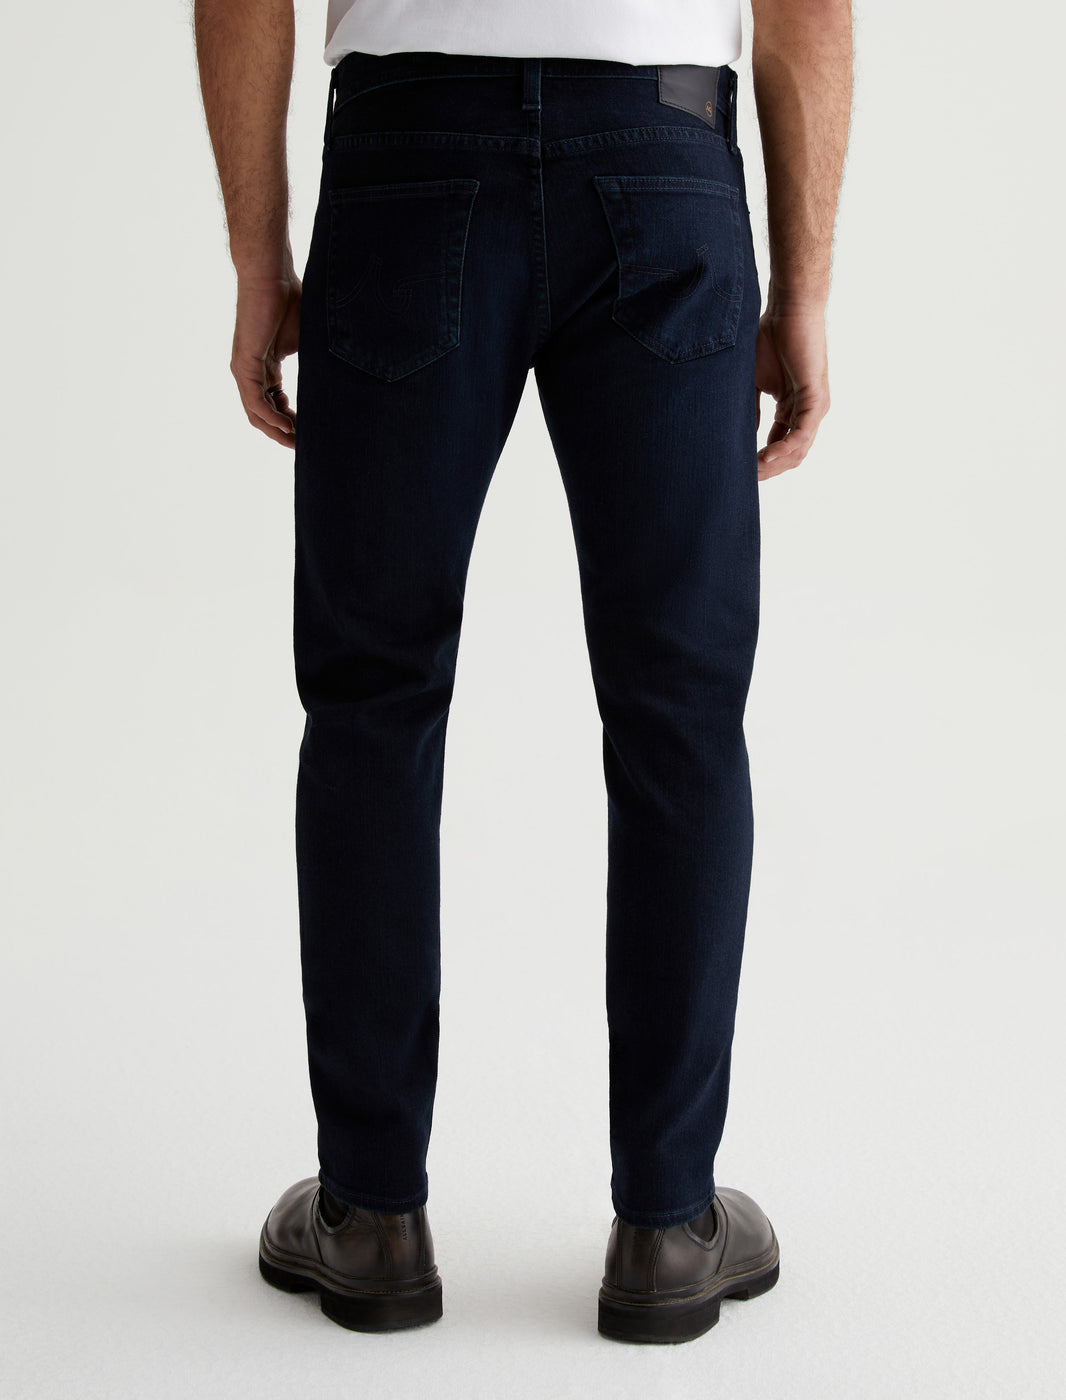 Dylan men's jeans regular fit regular waist straight leg black – CROSS JEANS